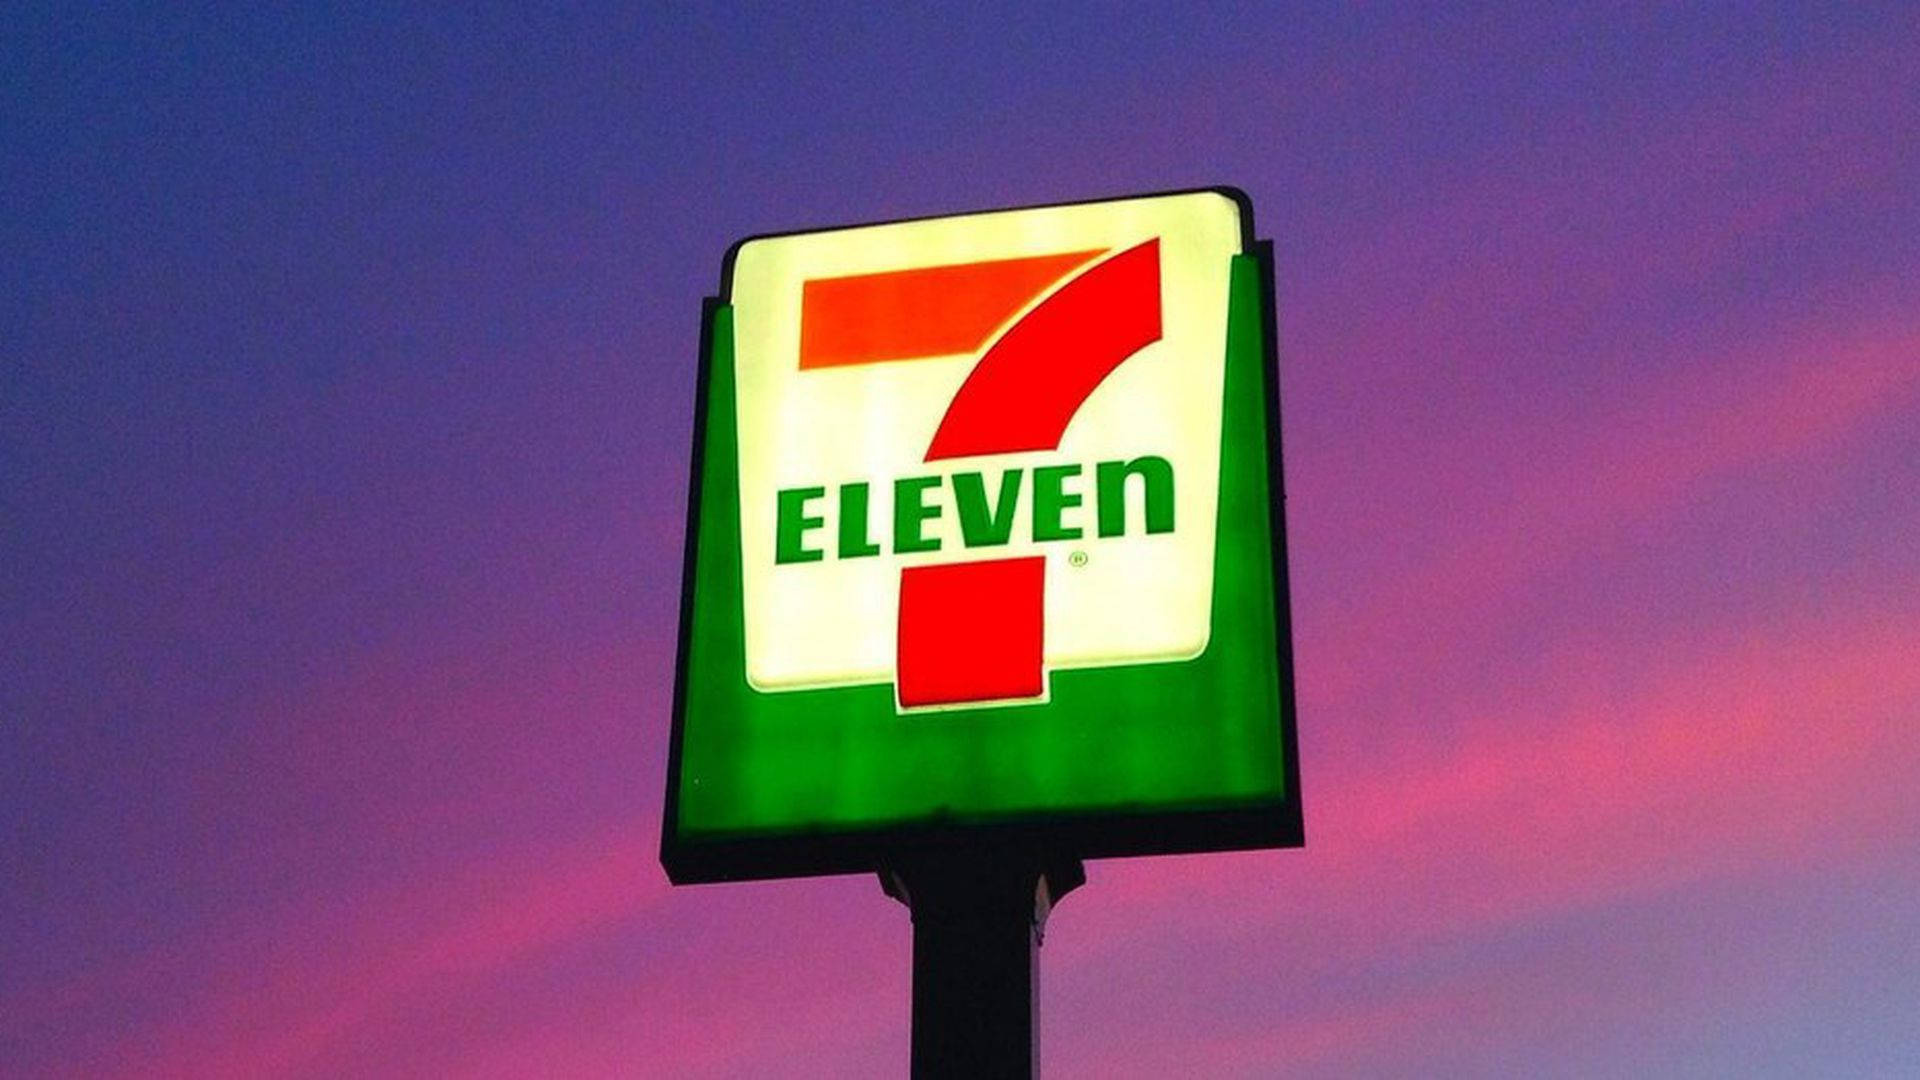 7 Eleven In Purple Skies Wallpaper